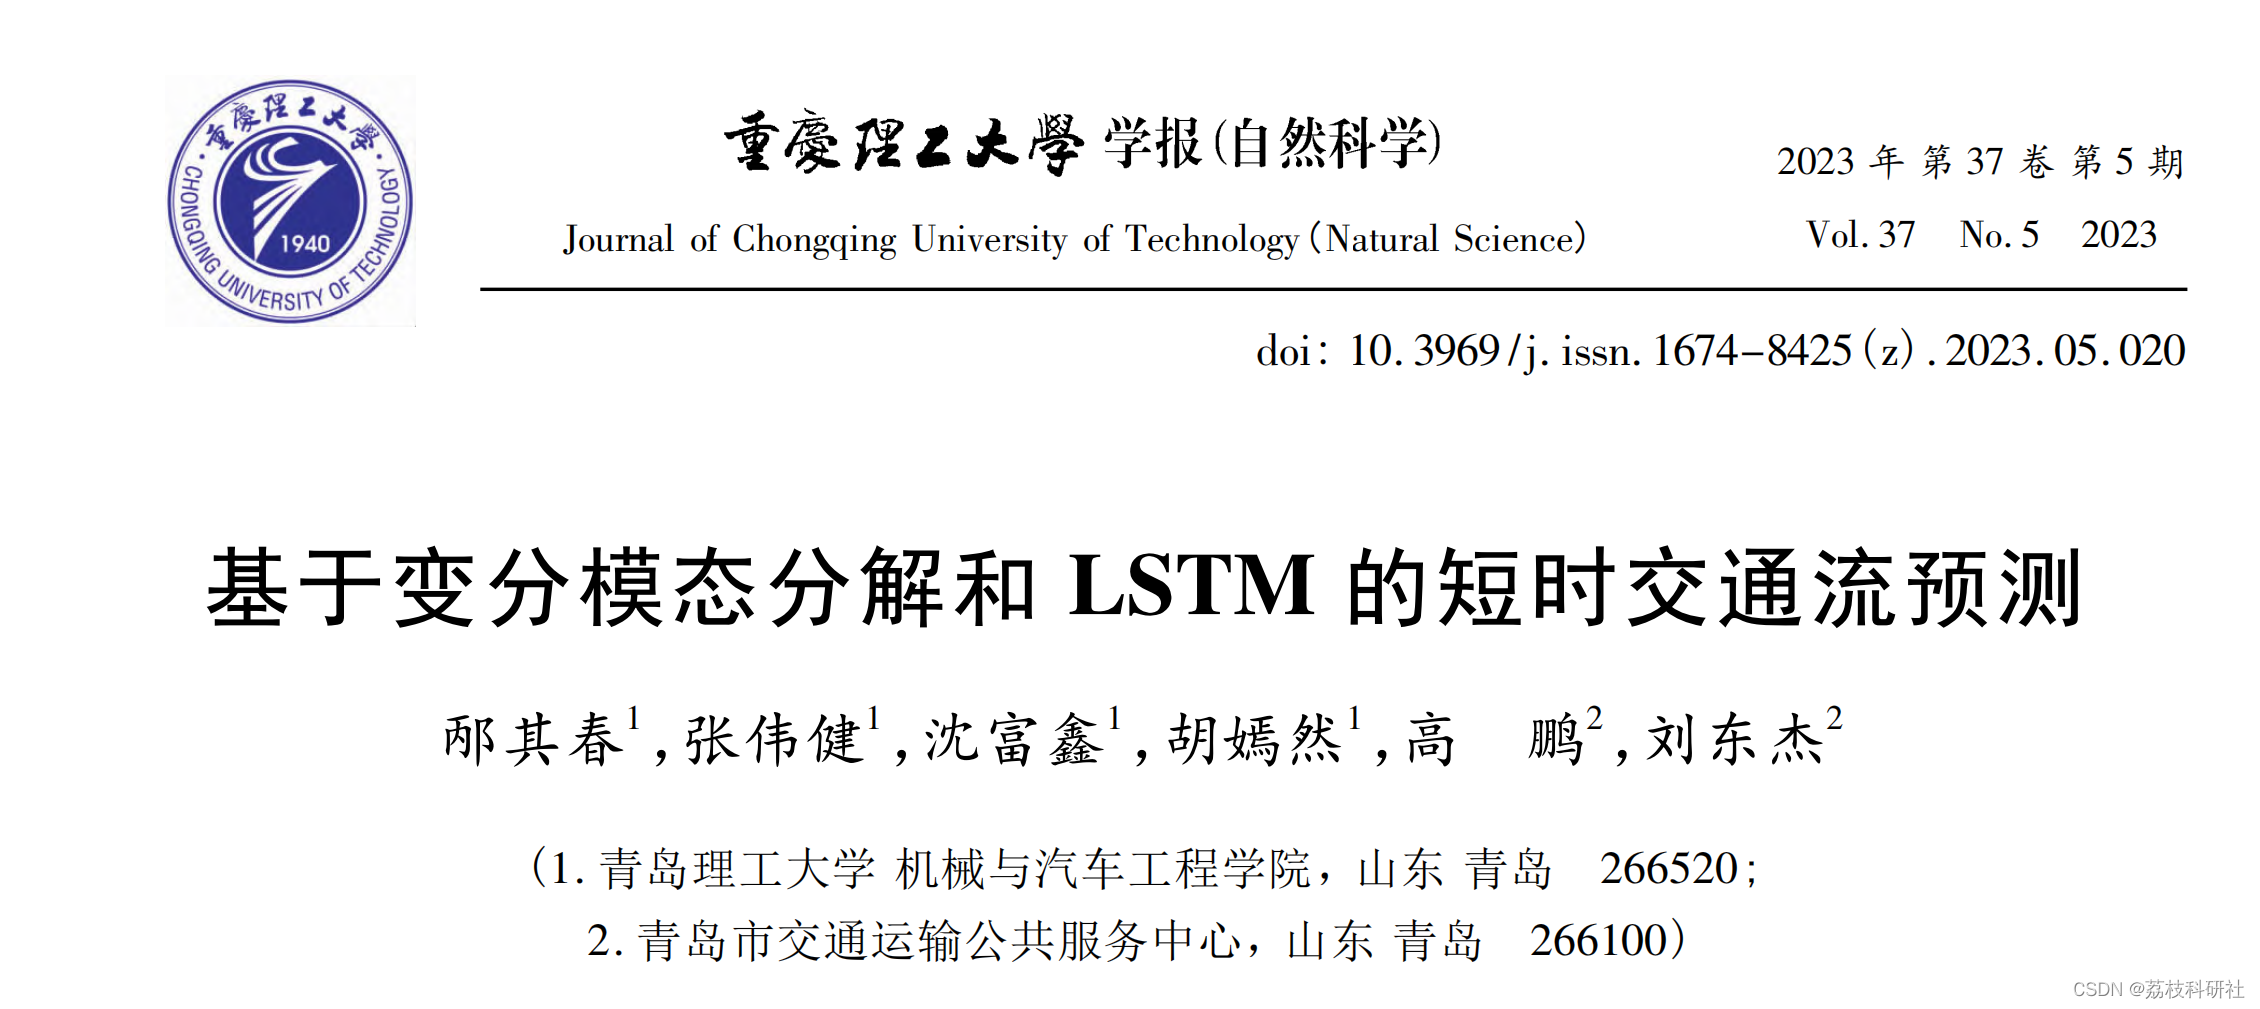 【VMD-LSTM】变分模态分解-长短时记忆神经网络研究（Python代码实现）